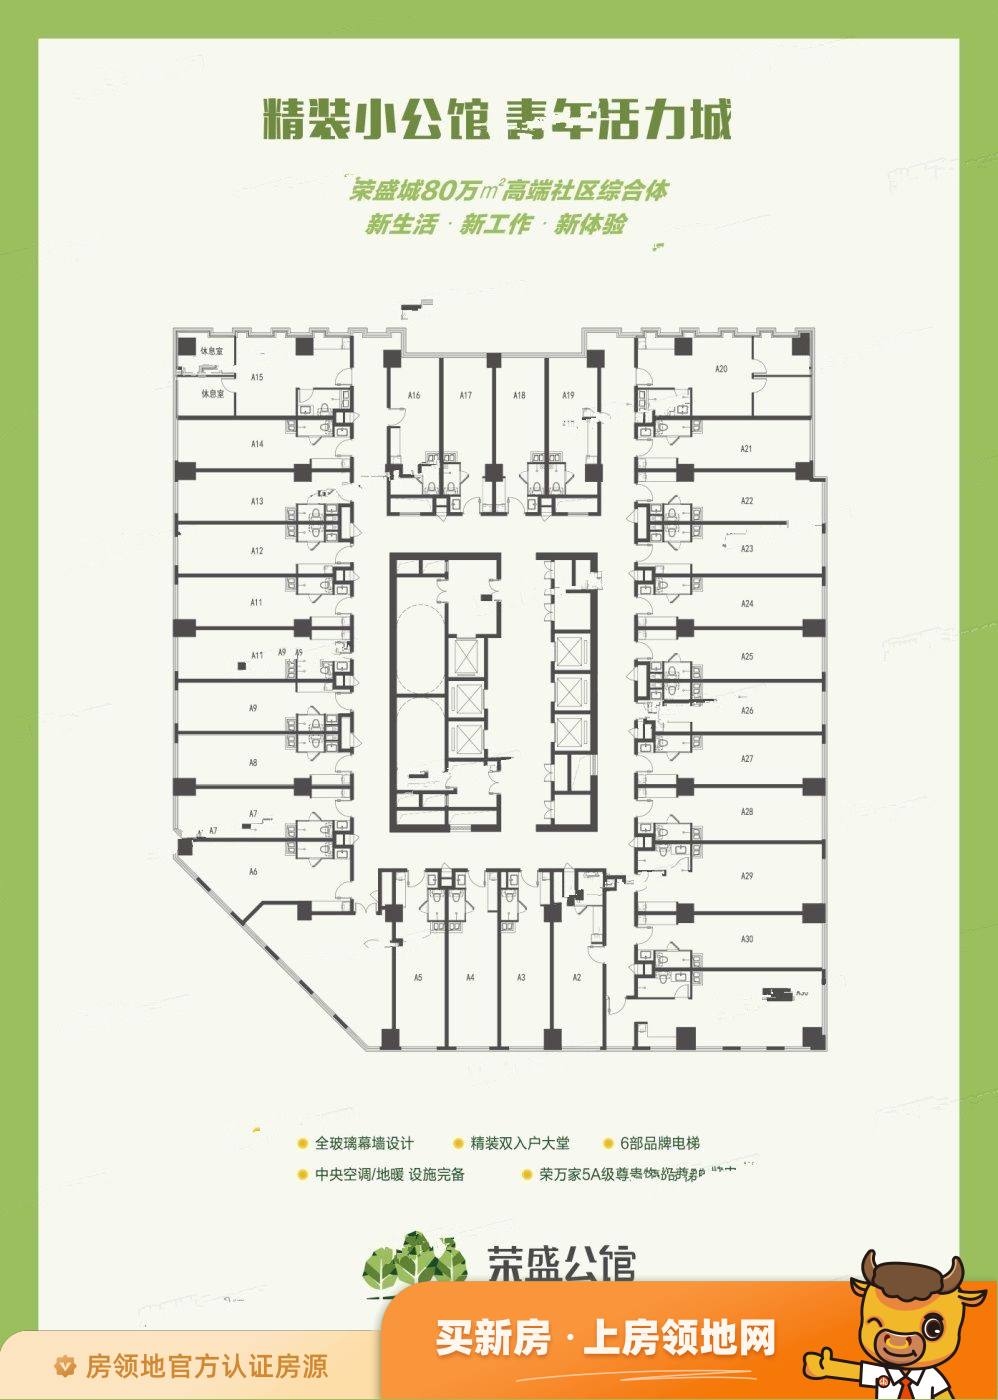 荣盛公馆规划图1